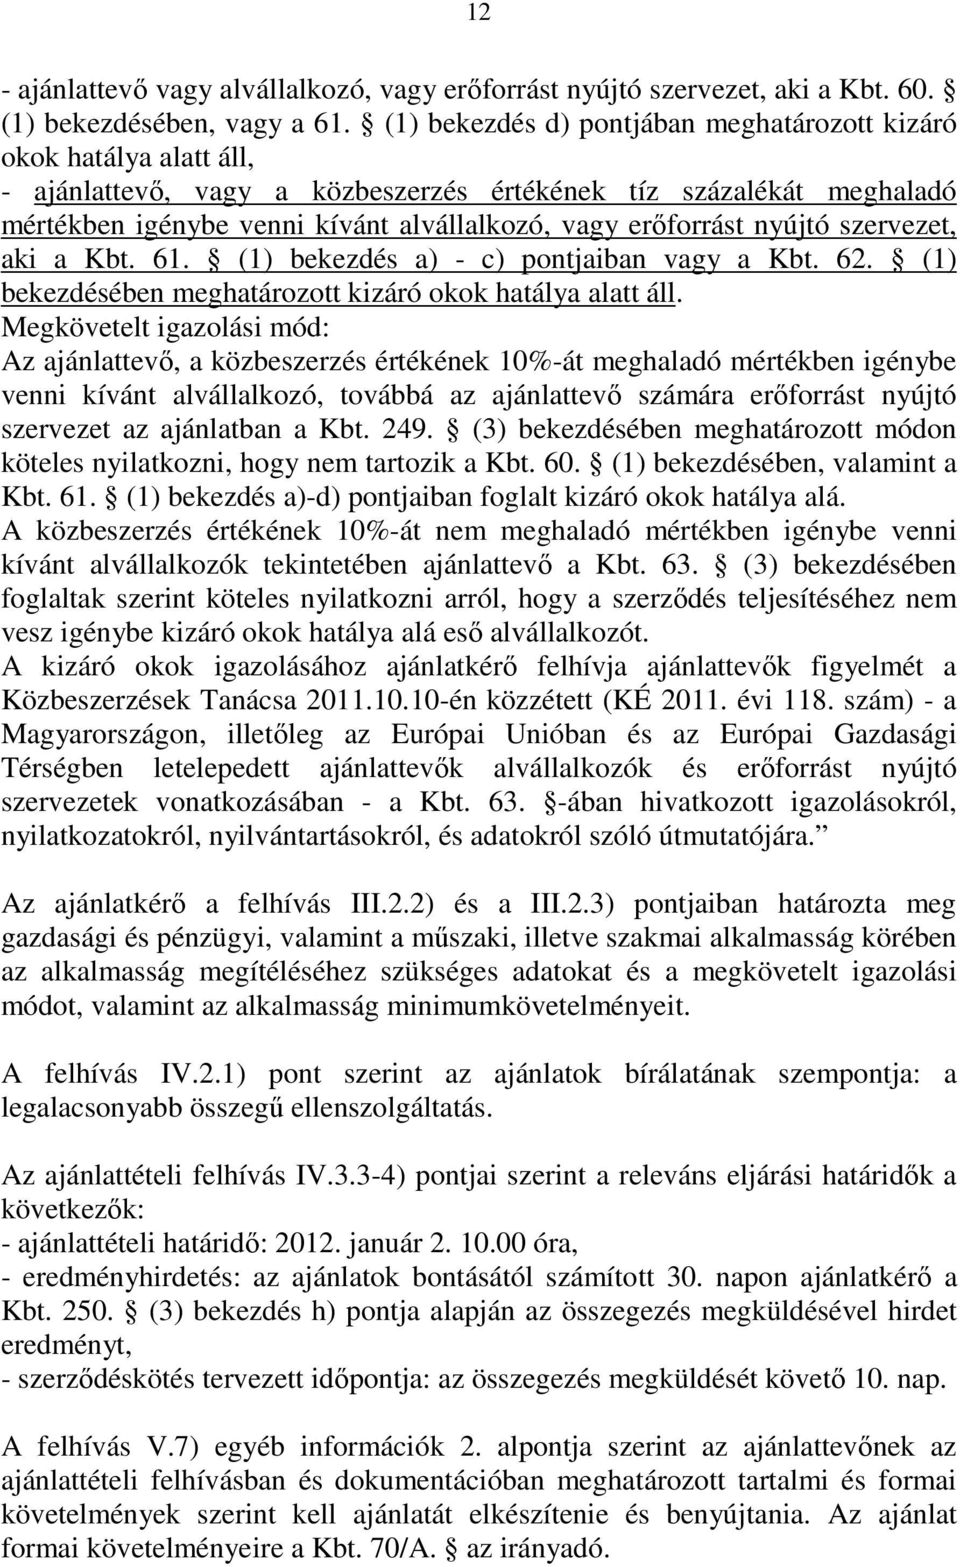 erıforrást nyújtó szervezet, aki a Kbt. 61. (1) bekezdés a) - c) pontjaiban vagy a Kbt. 62. (1) bekezdésében meghatározott kizáró okok hatálya alatt áll.